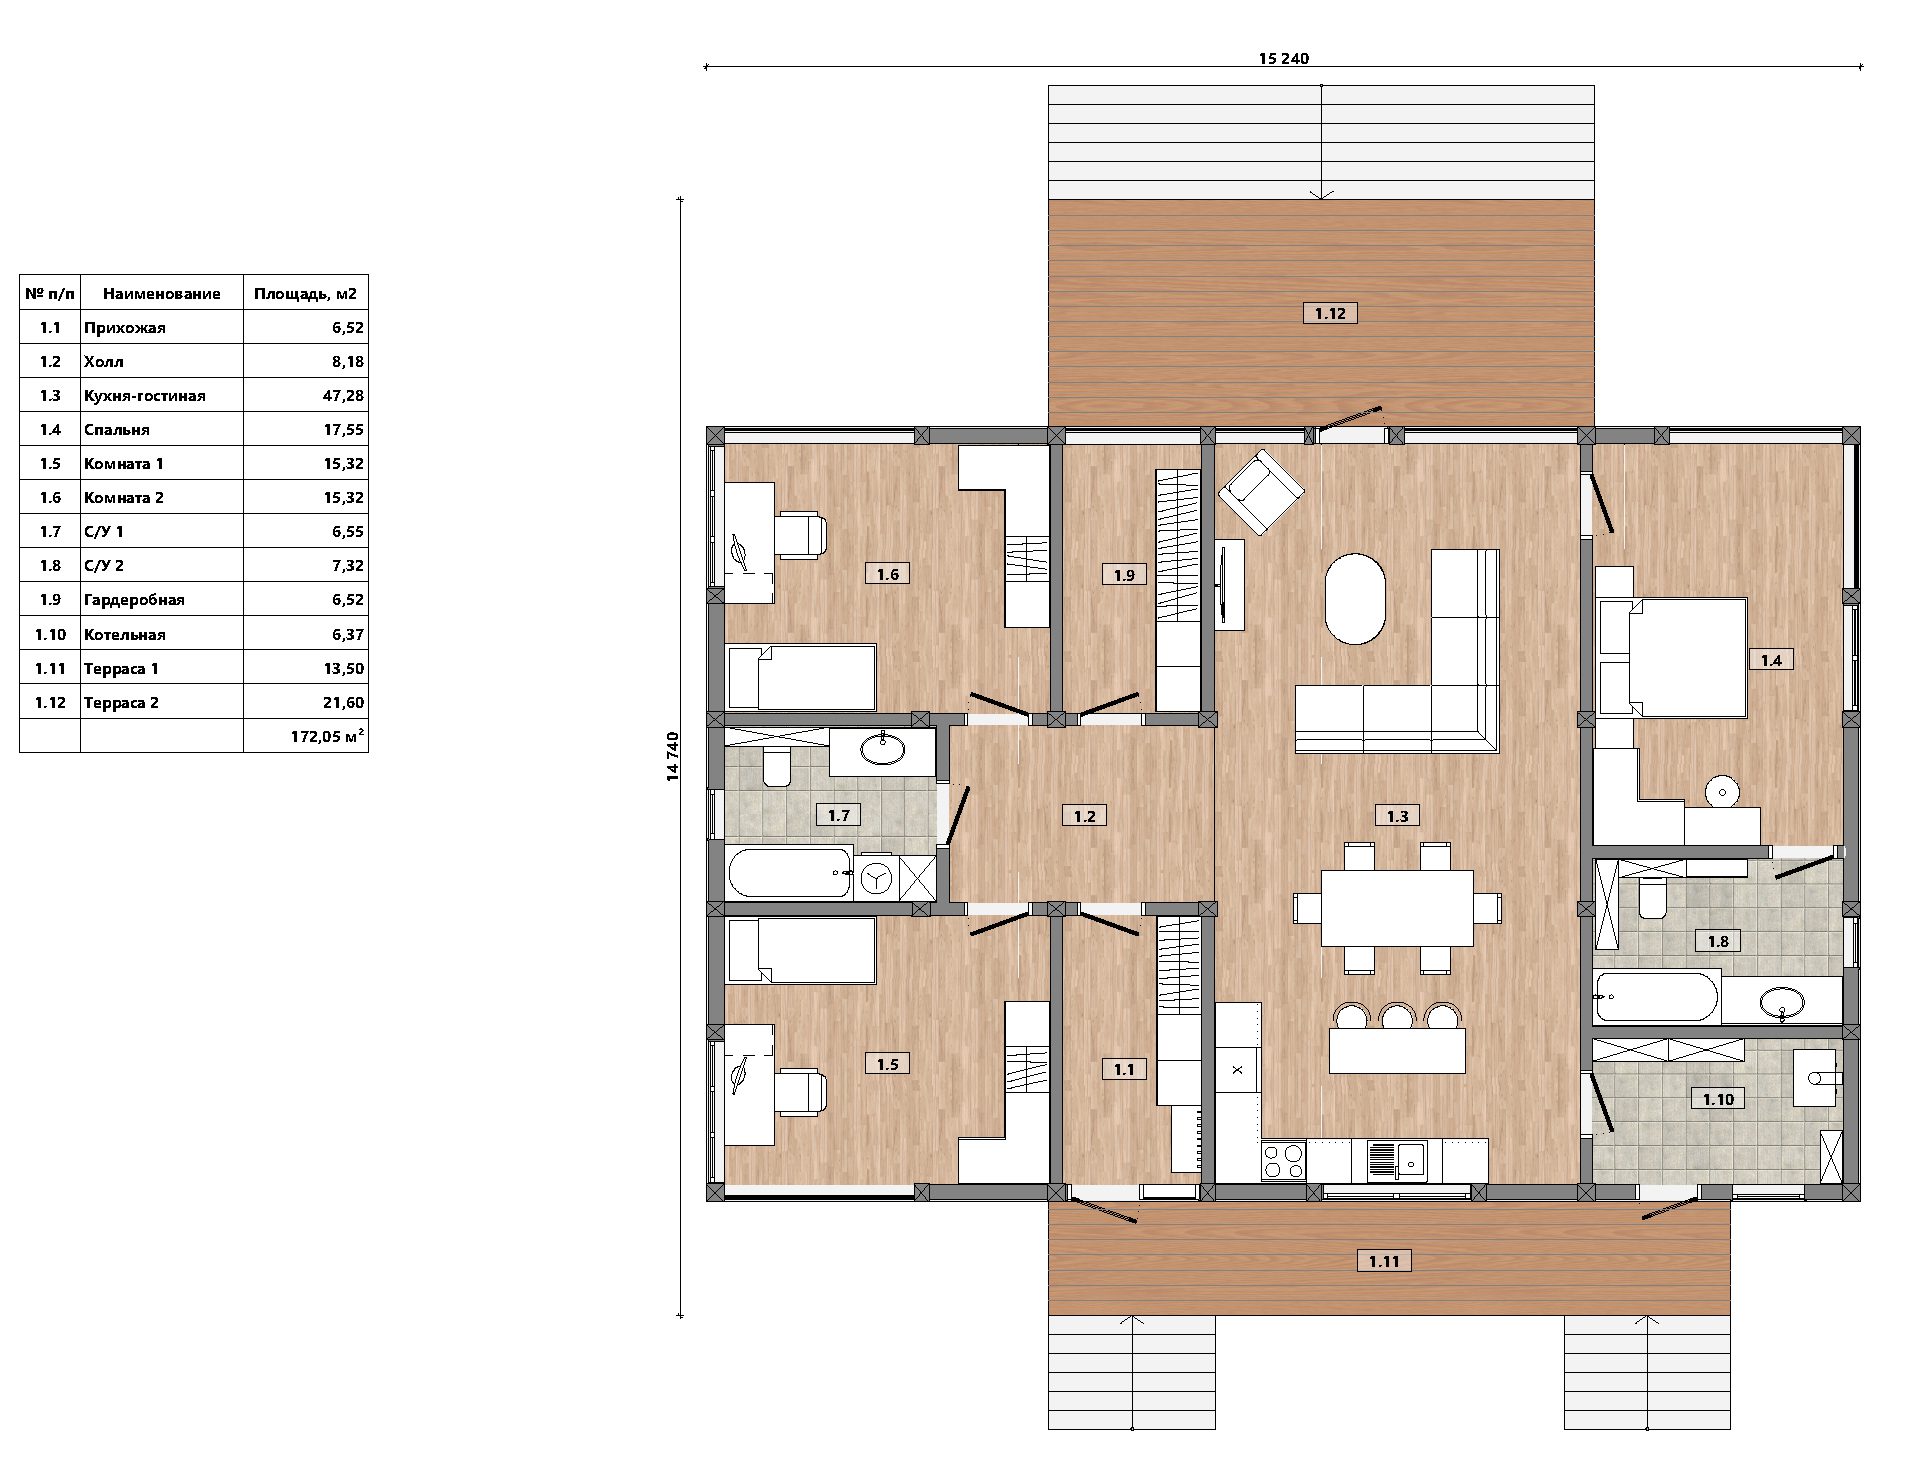 Проект дома фахверк РЕАЛ 172 одноэтажный с плоской кровлей, фахверк с высоким потолком, фахверк с большой гостиной